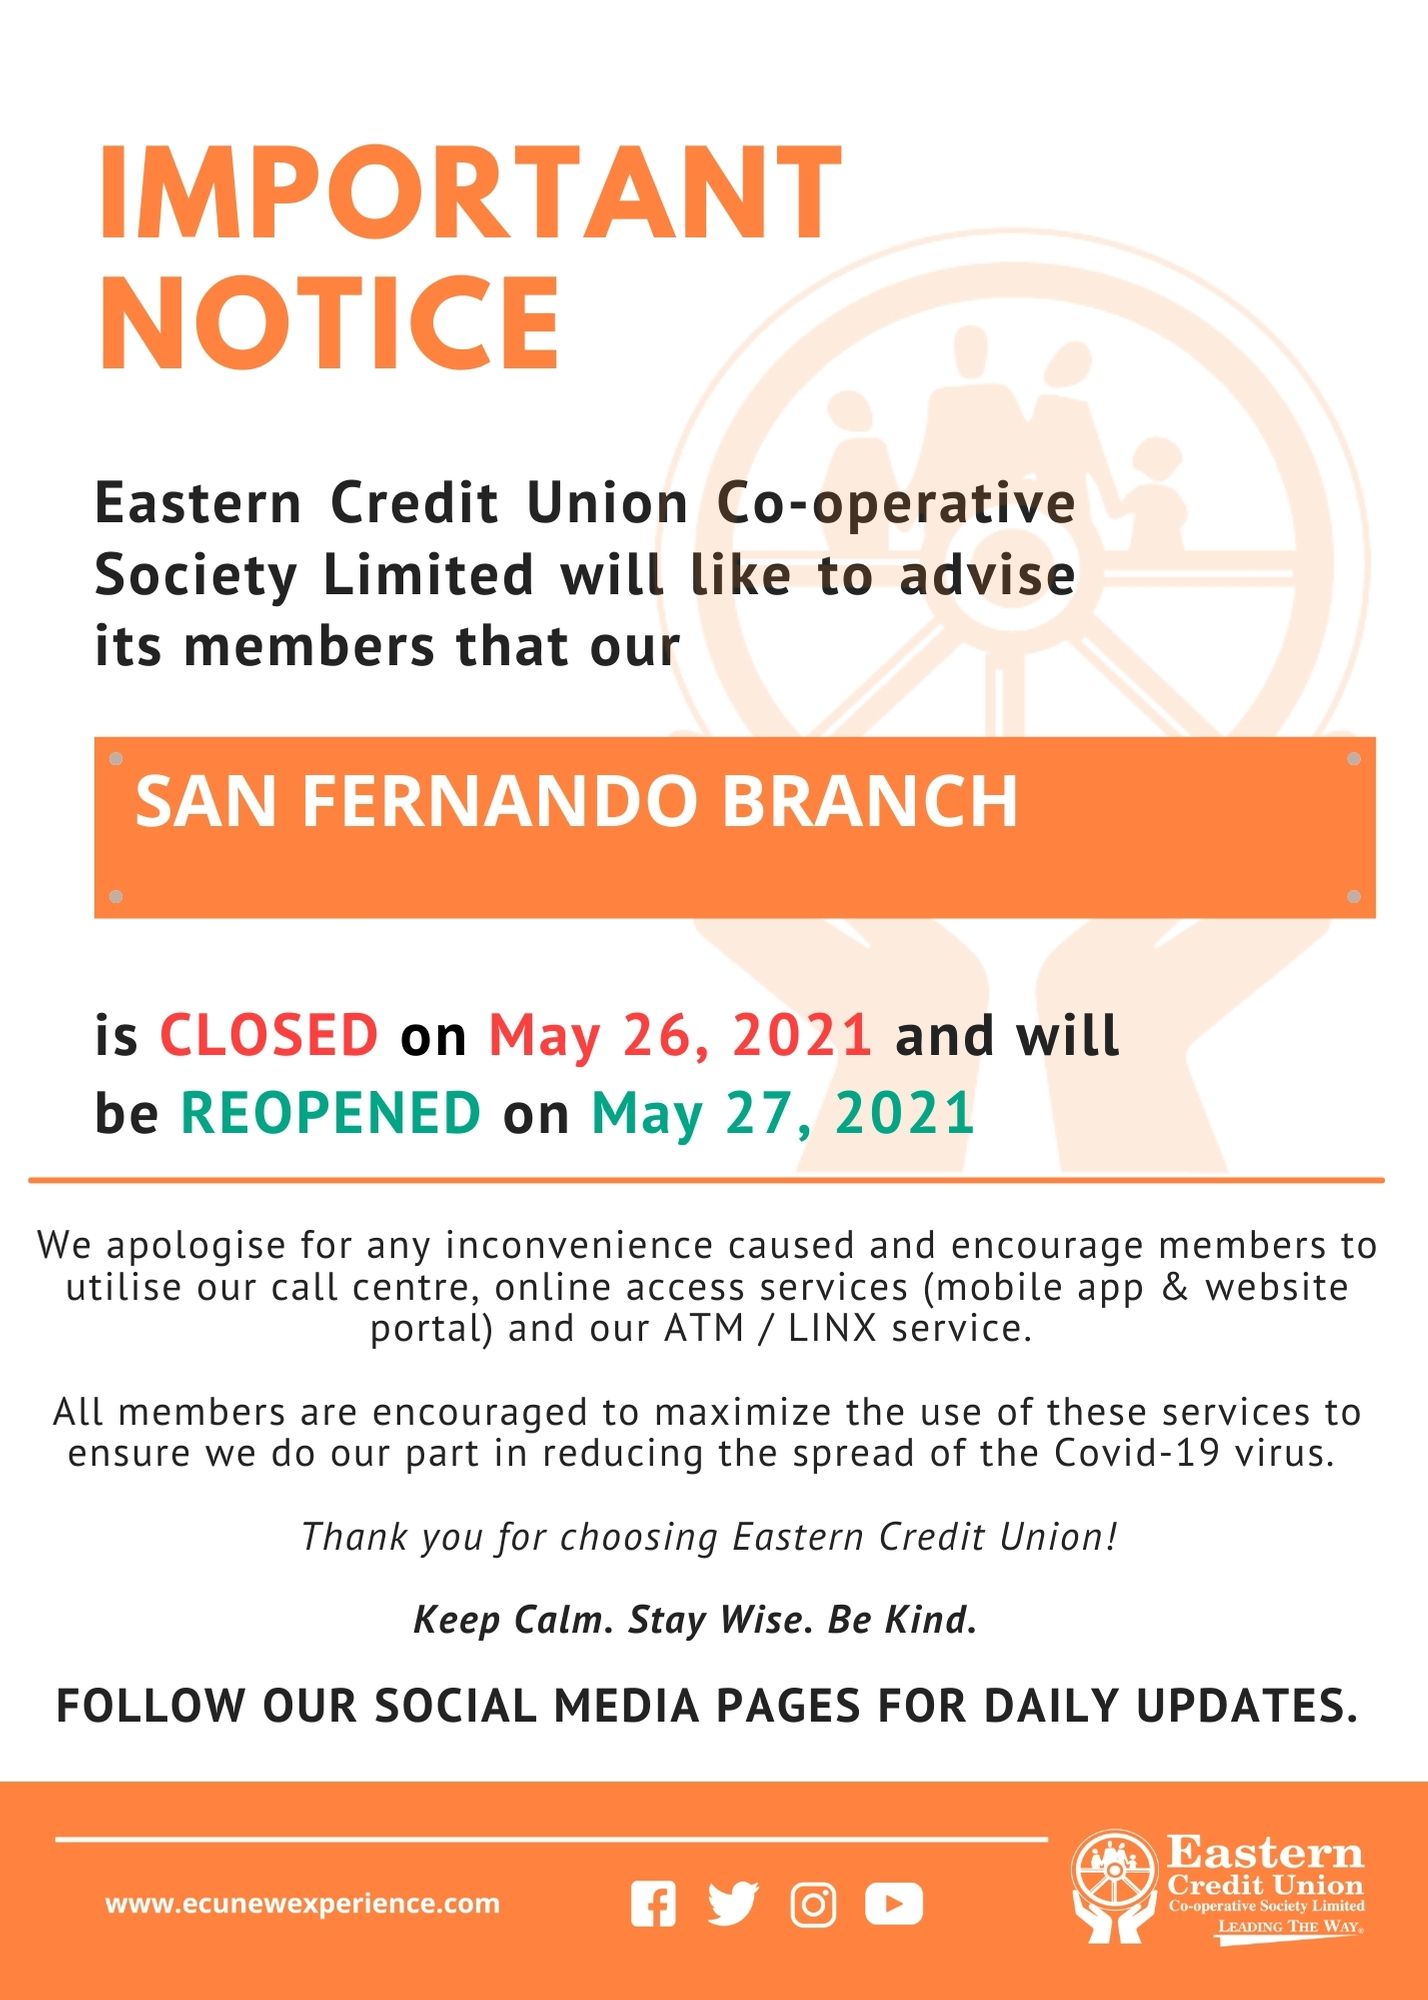 Branch Closure Notice - San Fernando